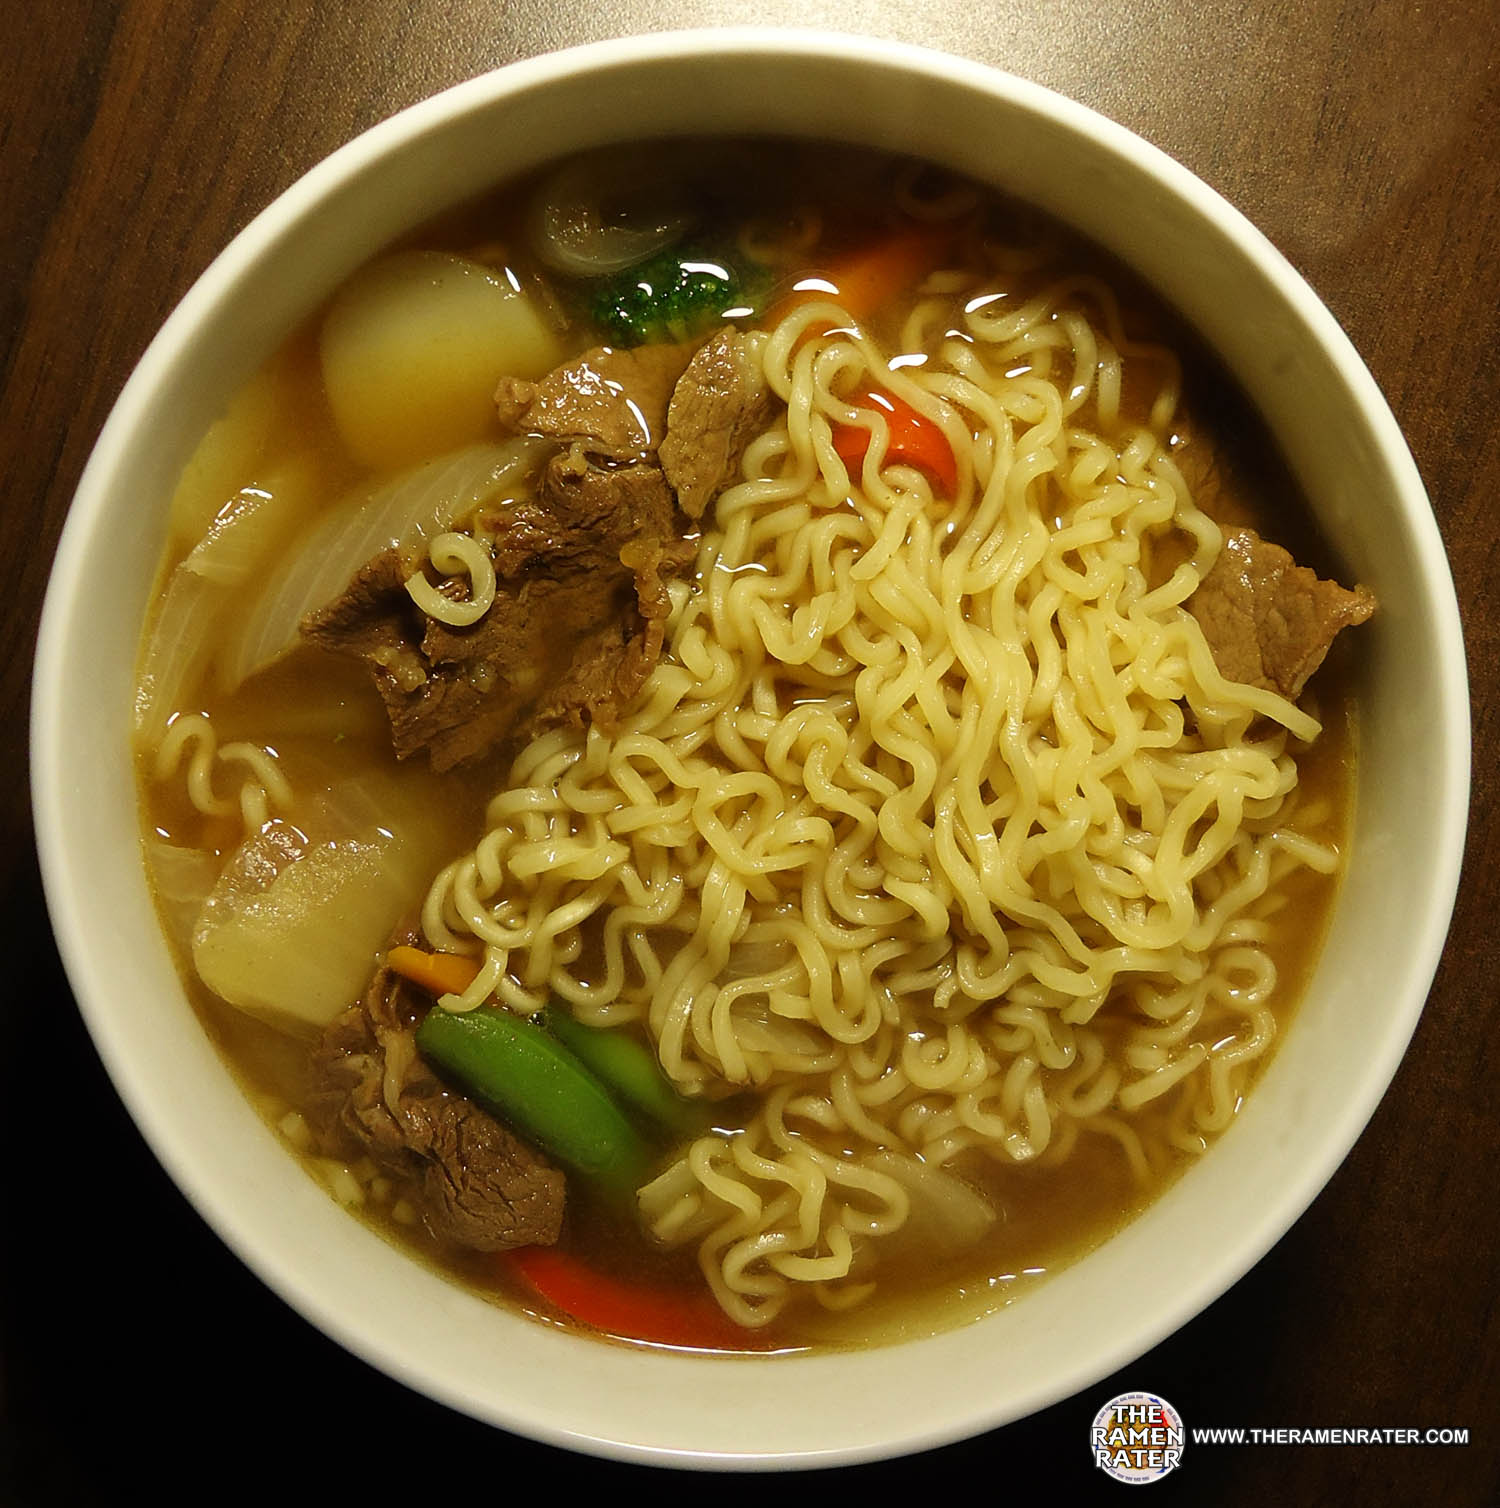 #919: Maruchan 35% Less Sodium Beef Flavor Ramen Noodle Soup - The